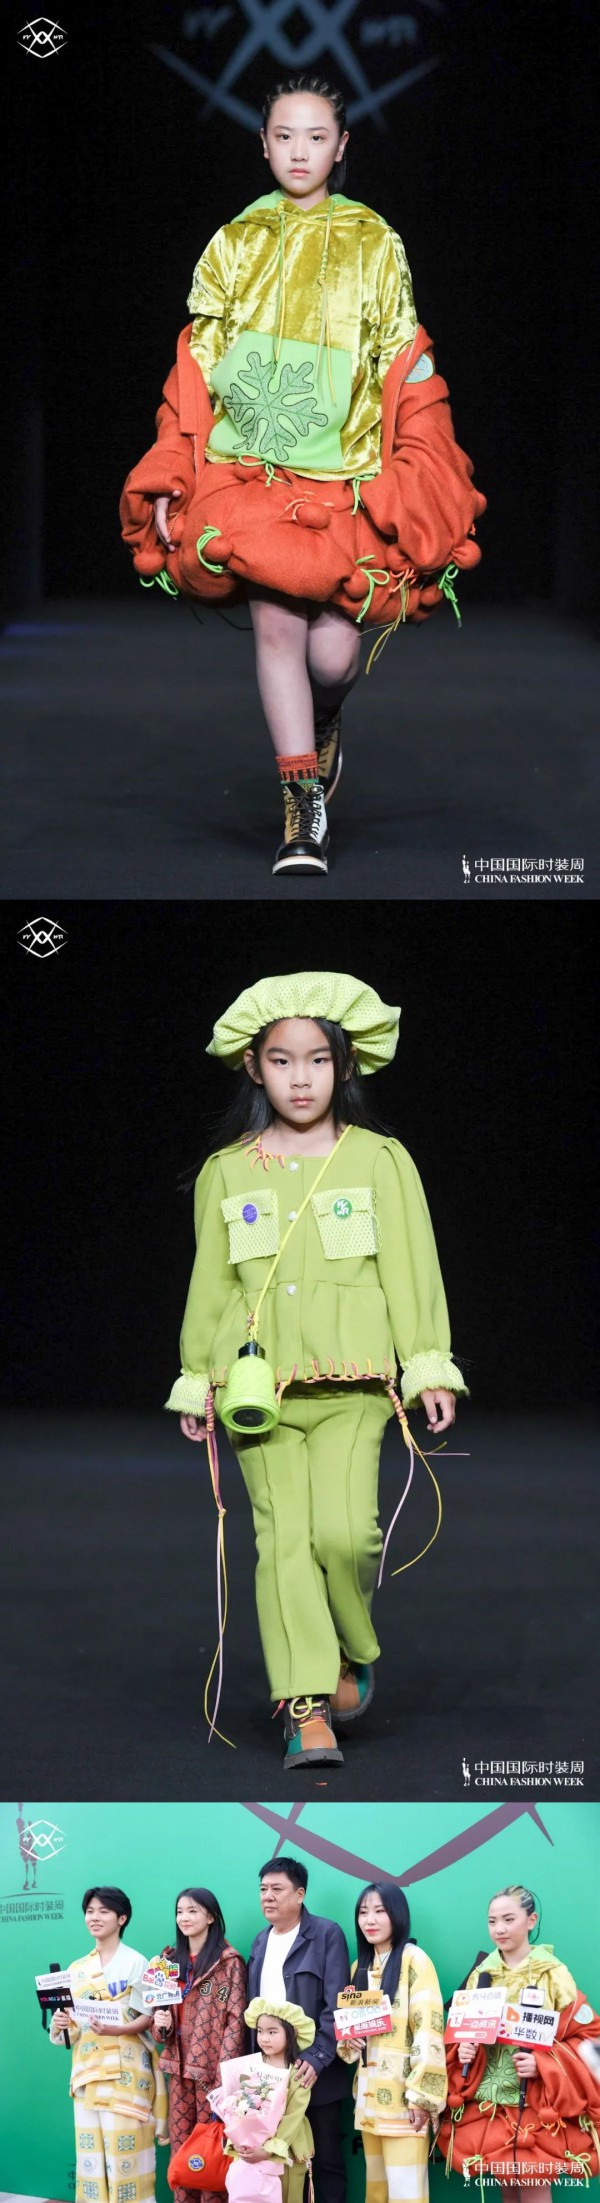 中国童装高级定制品牌“YYWR以衣唯人”首次亮相中国国际时装周